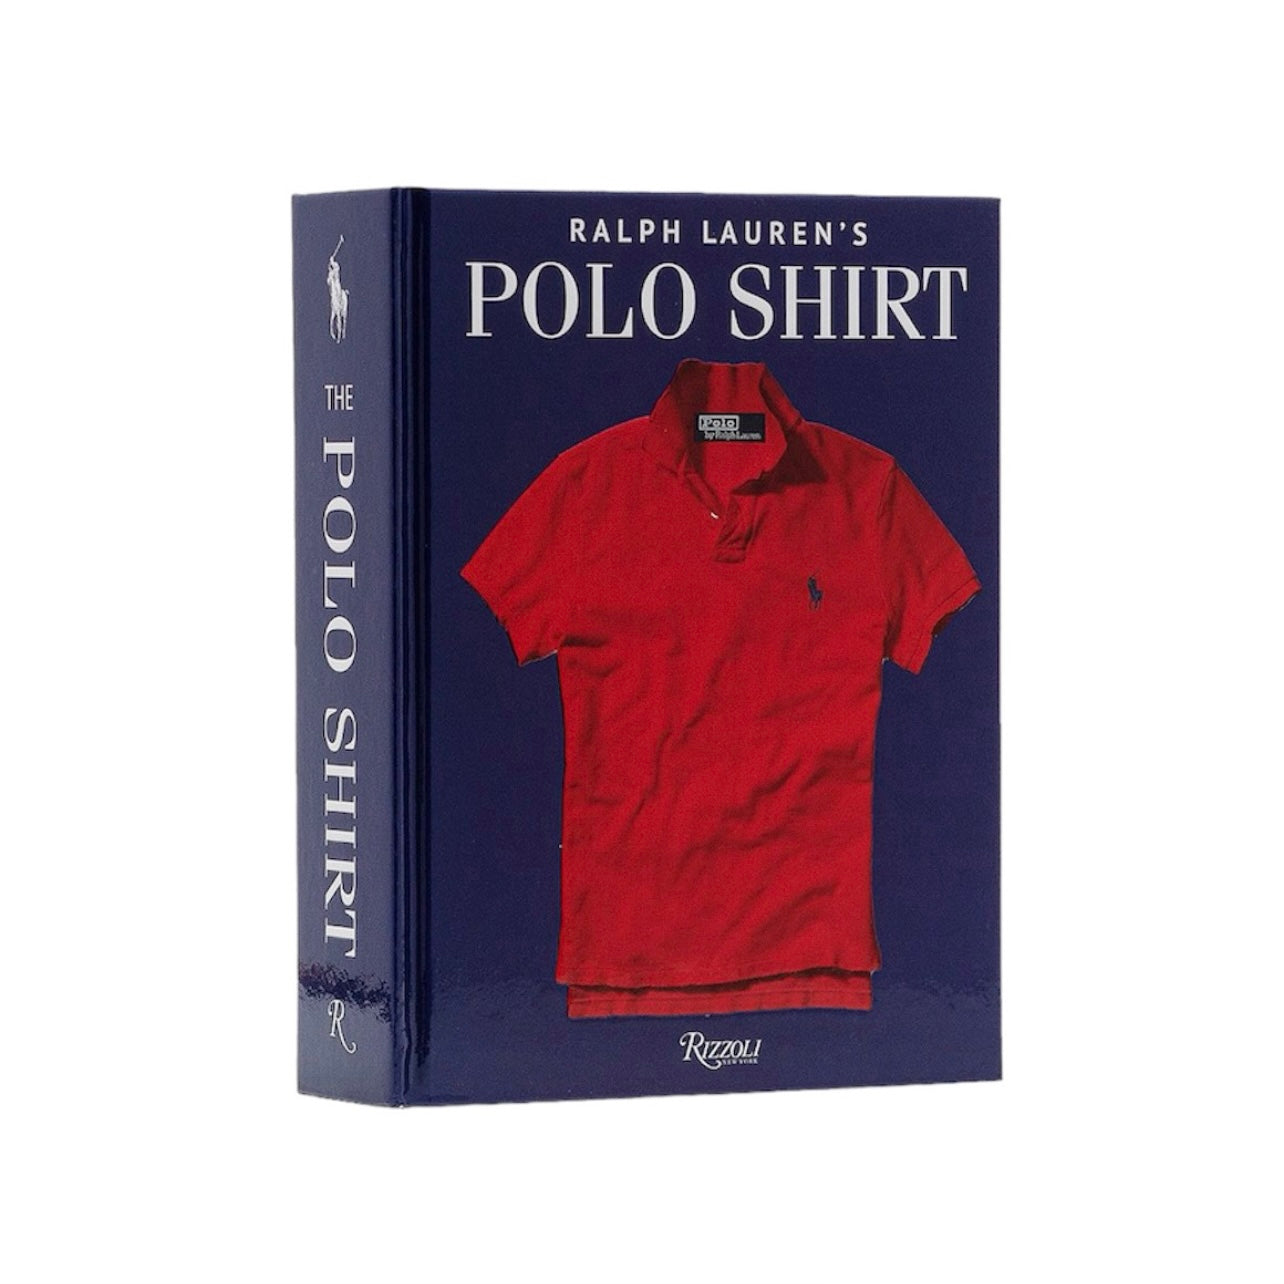 Ralph Lauren’s The Polo Shirt